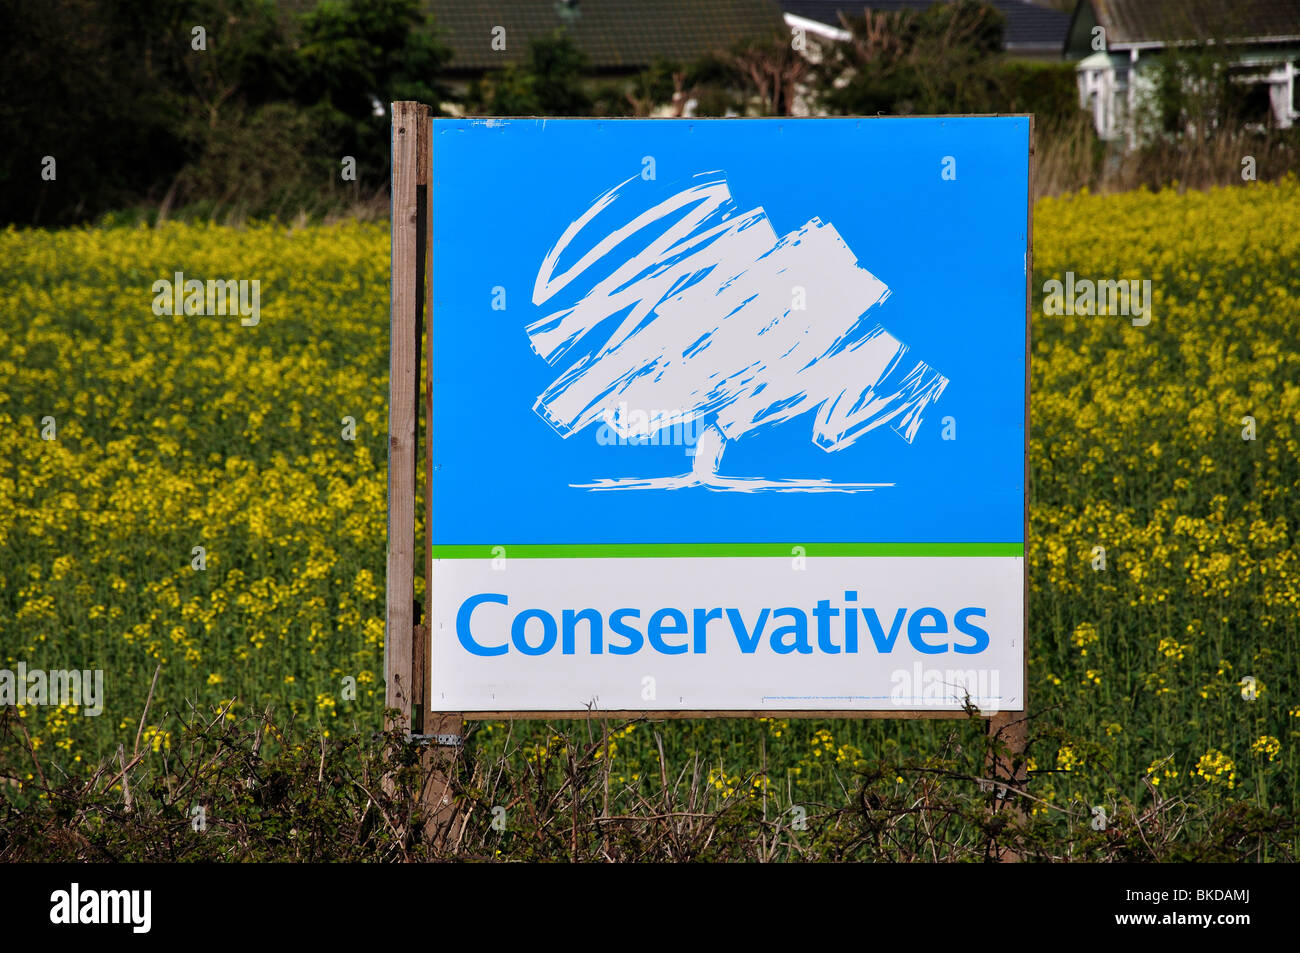 Affiche électorale du parti conservateur dans le champ, près de Middleton-sur-Mer, West Sussex, Angleterre, Royaume-Uni Banque D'Images